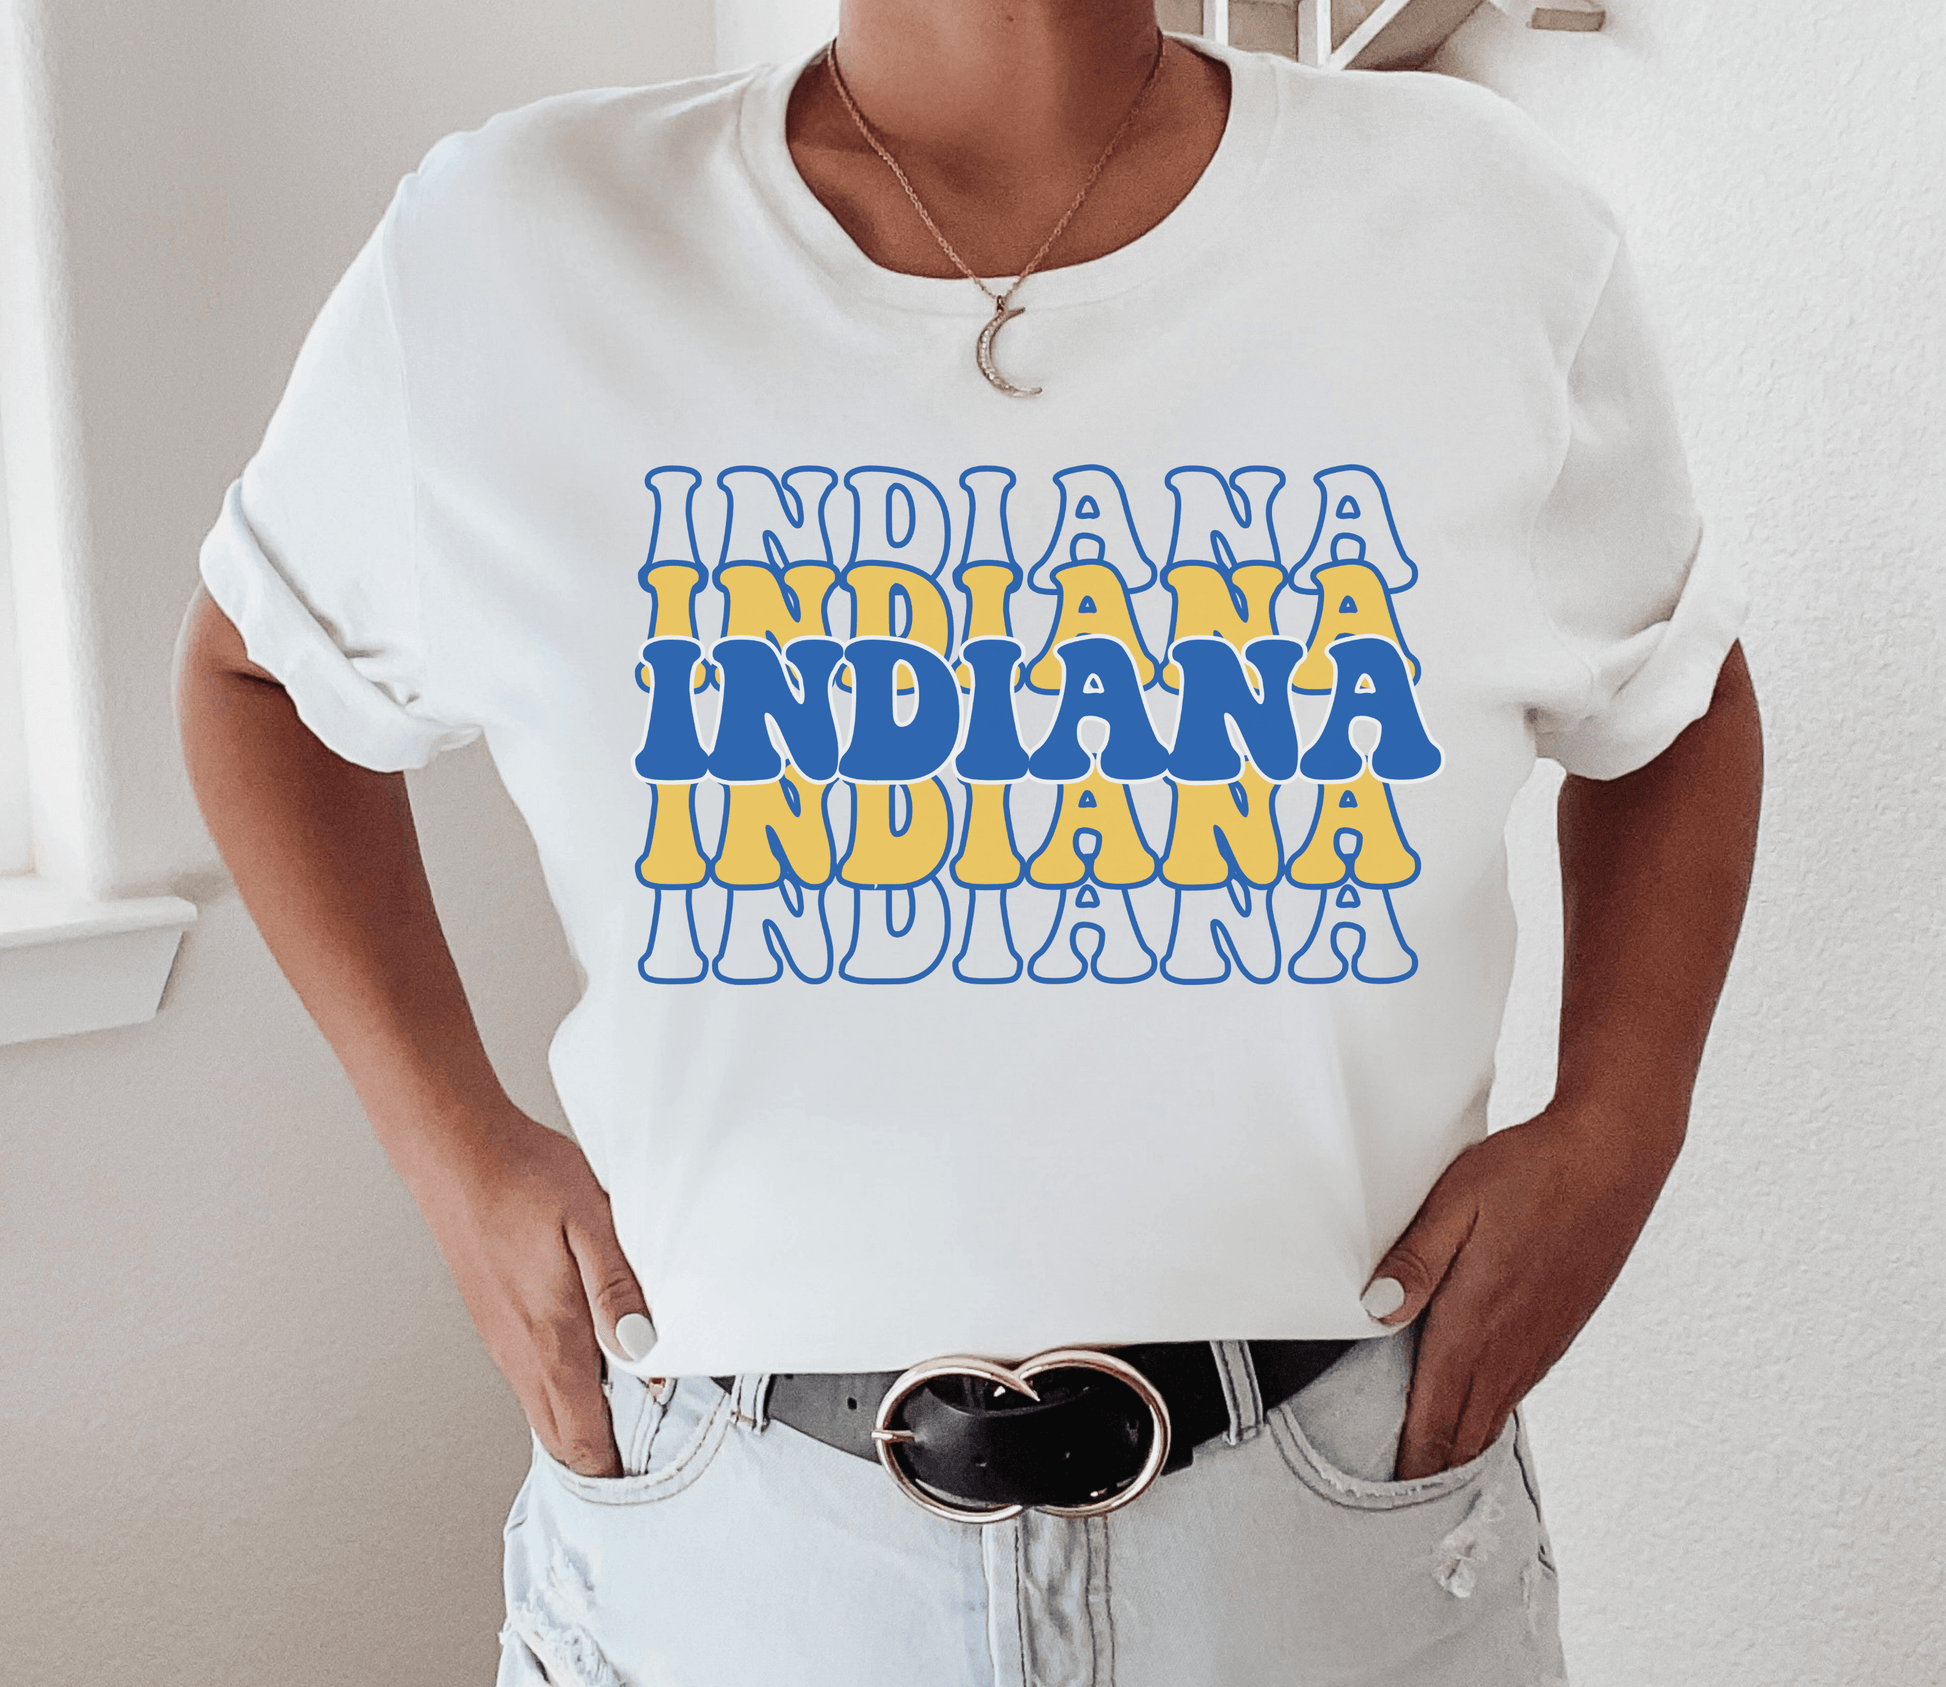 Home State Indiana Shirt - BentleyBlueCo